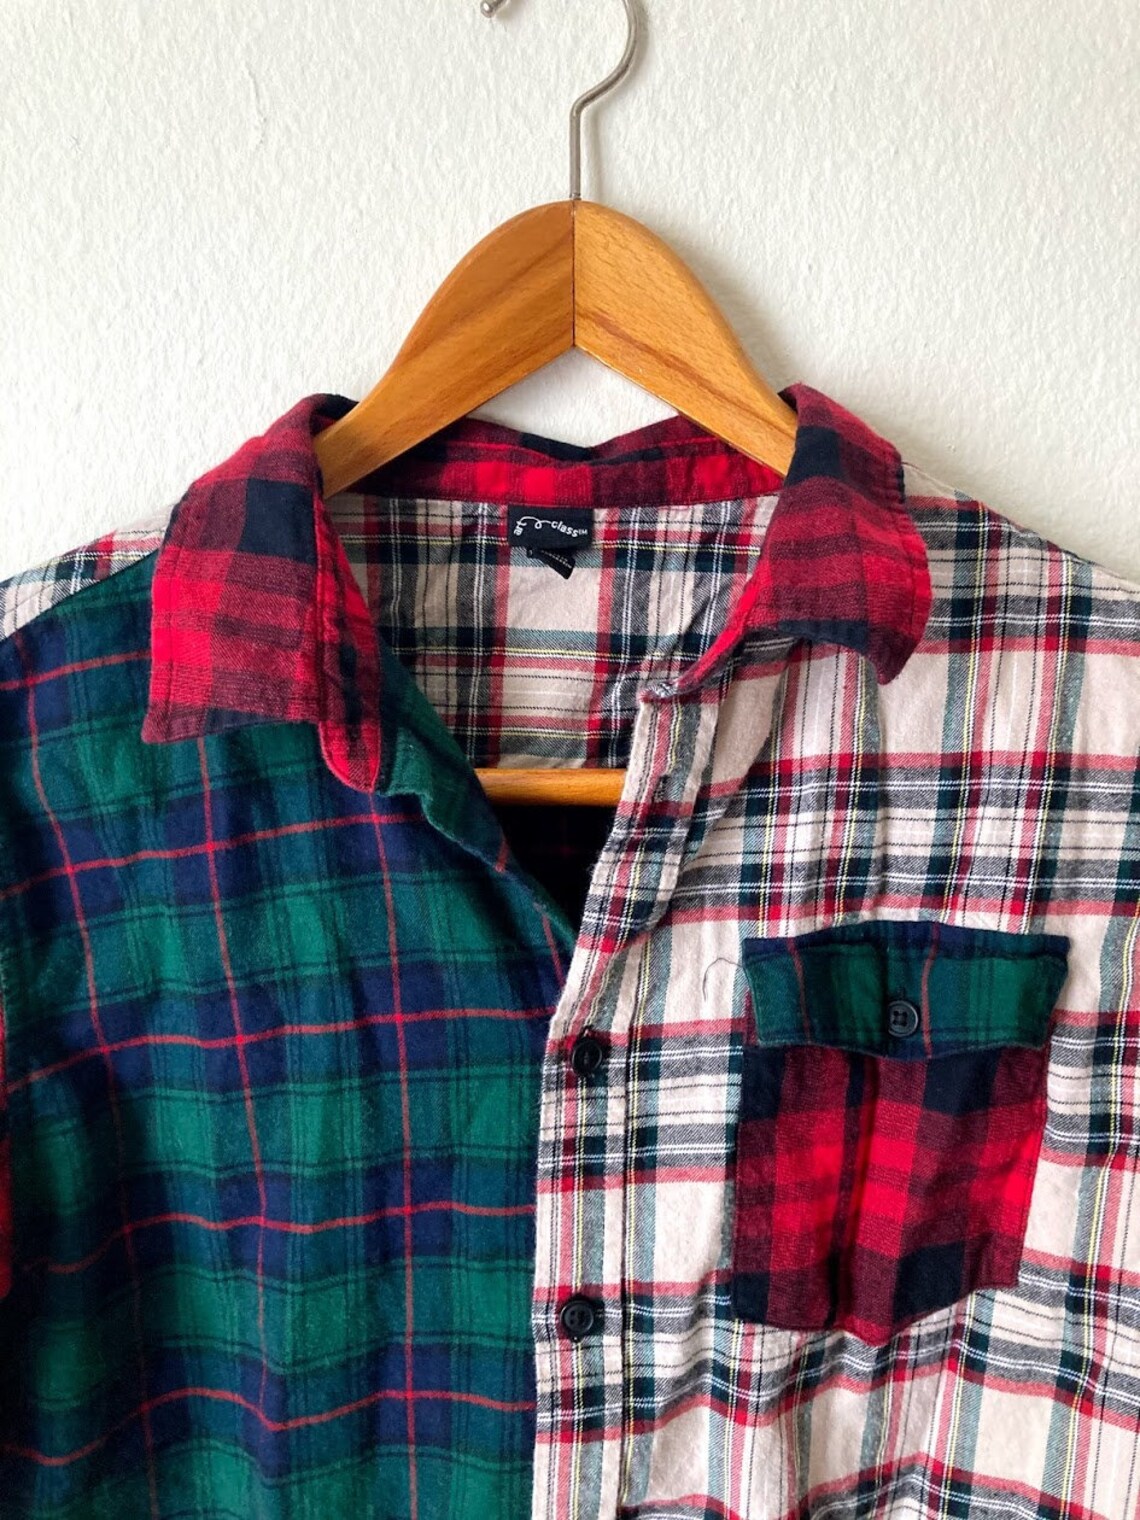 Mismatched Plaid Shirt Flannel Unisex Multi Colored Cotton | Etsy